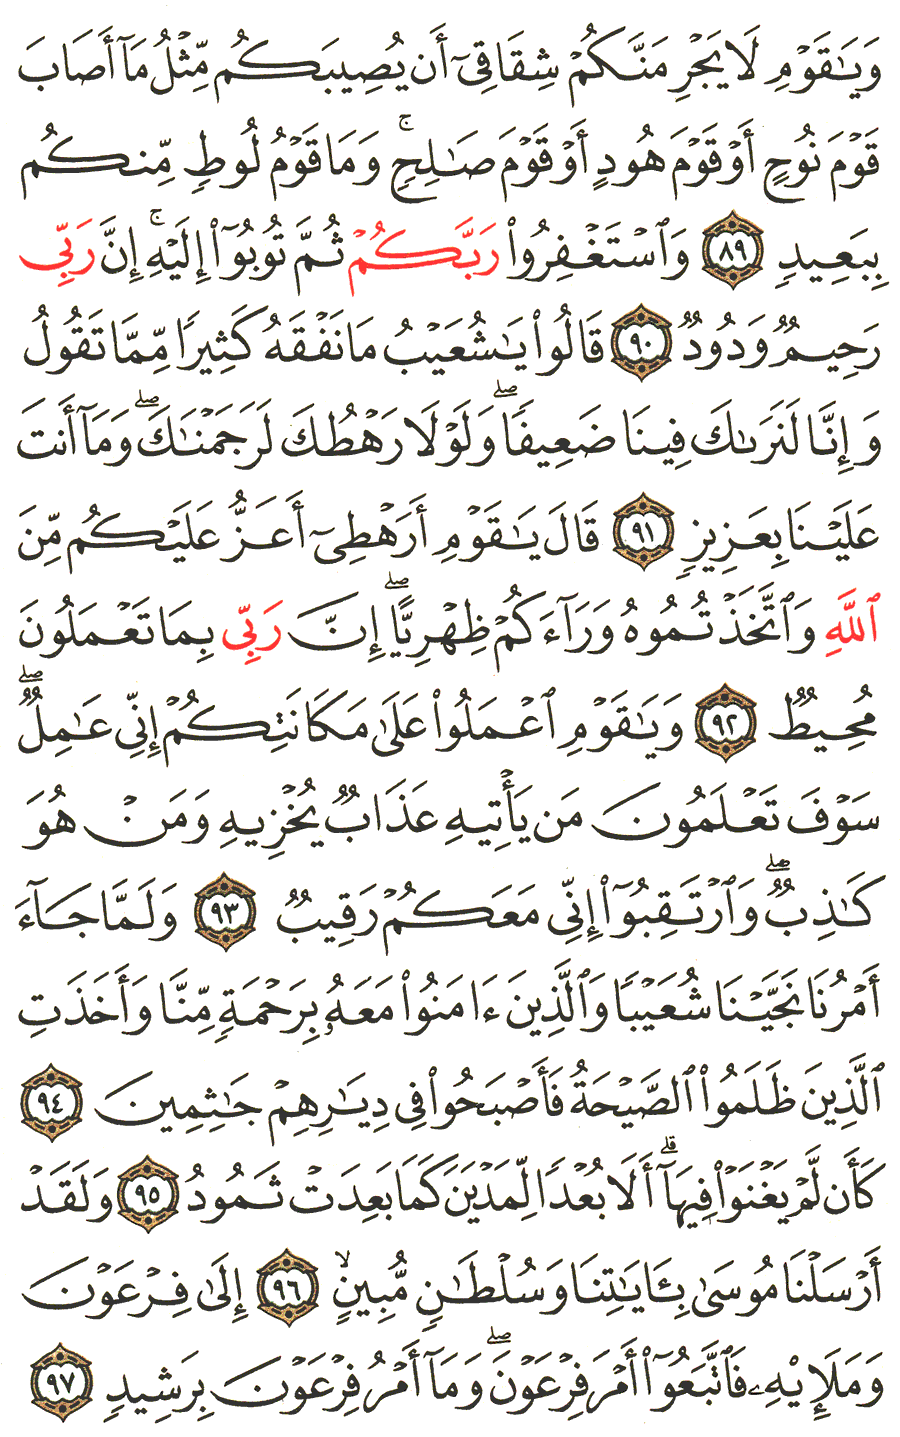 الصفحة 232 من القرآن الكريم